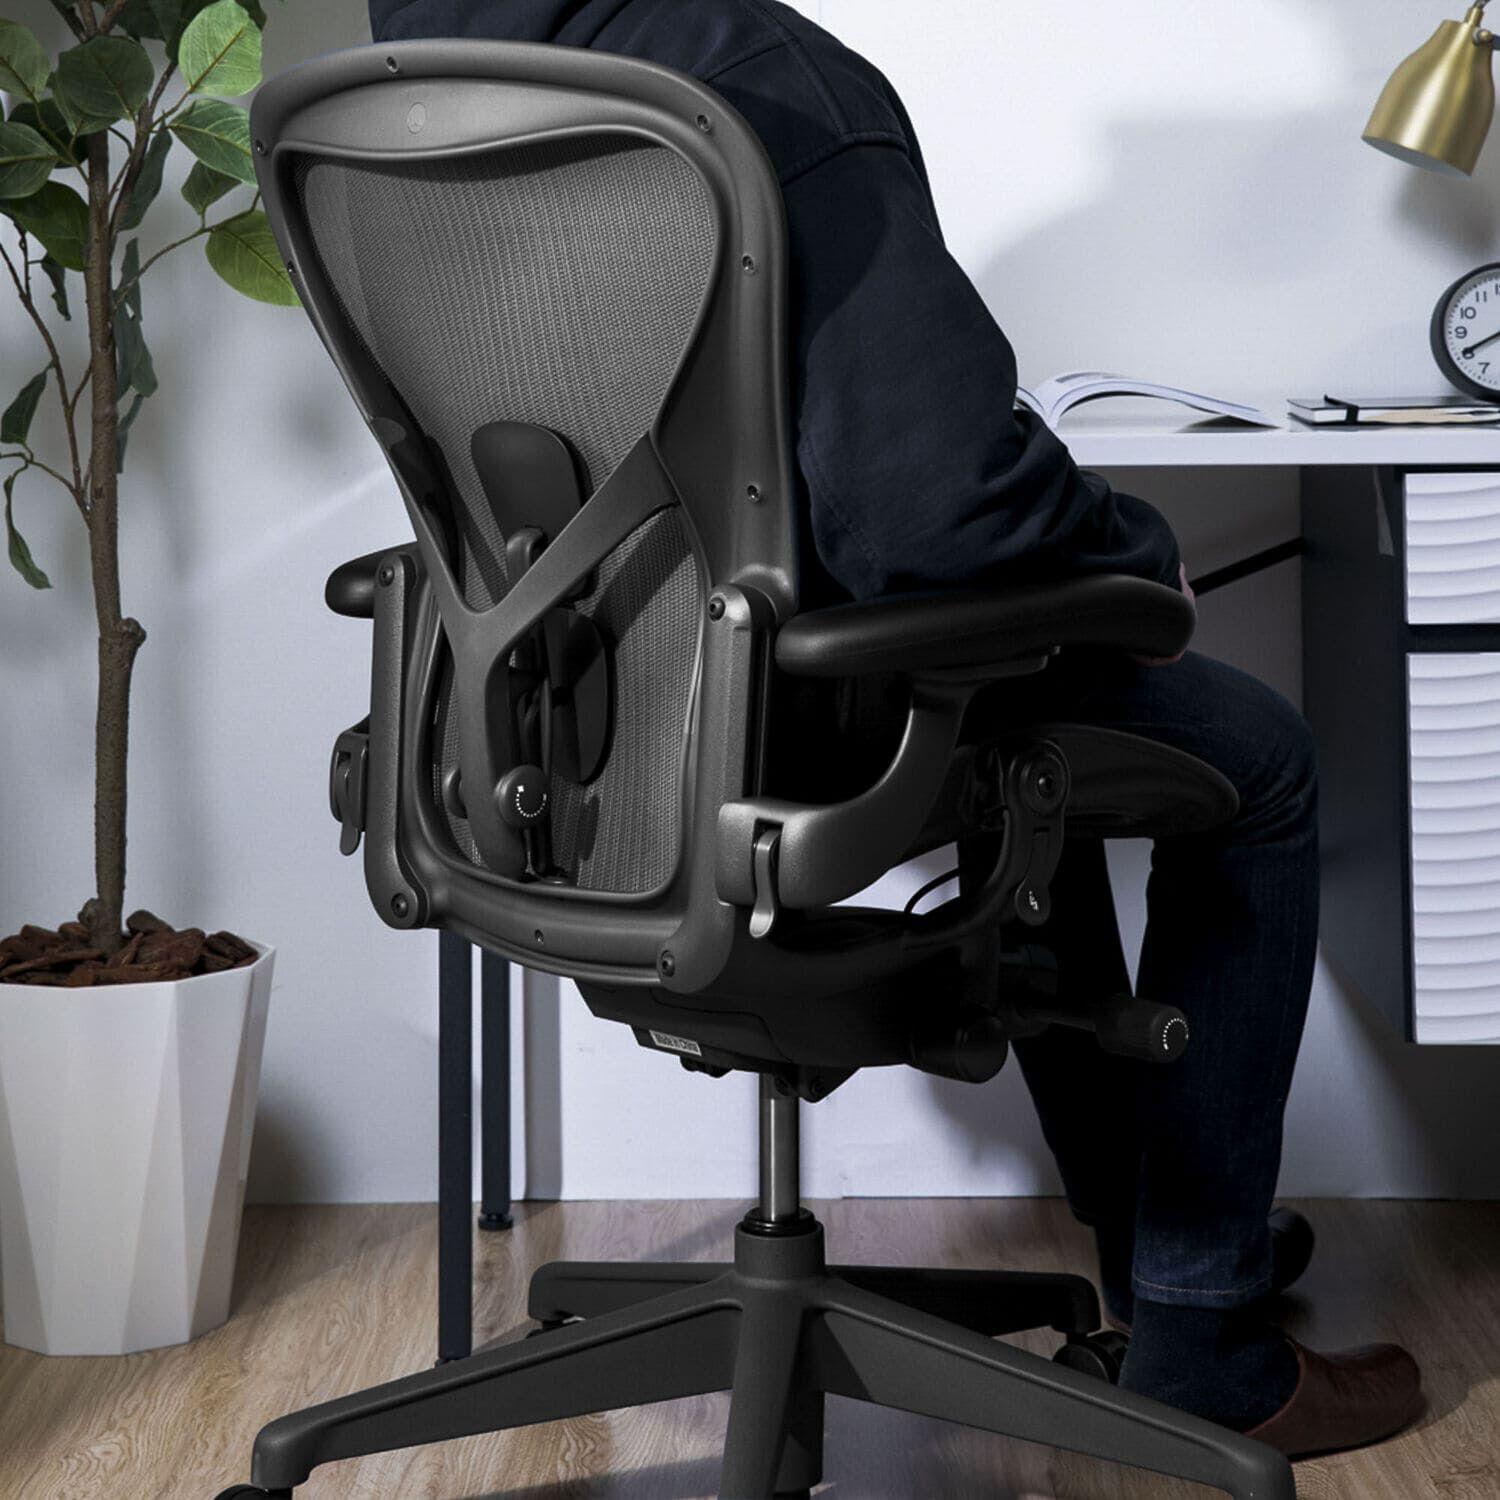 アーロンチェア腰痛を防止する椅子